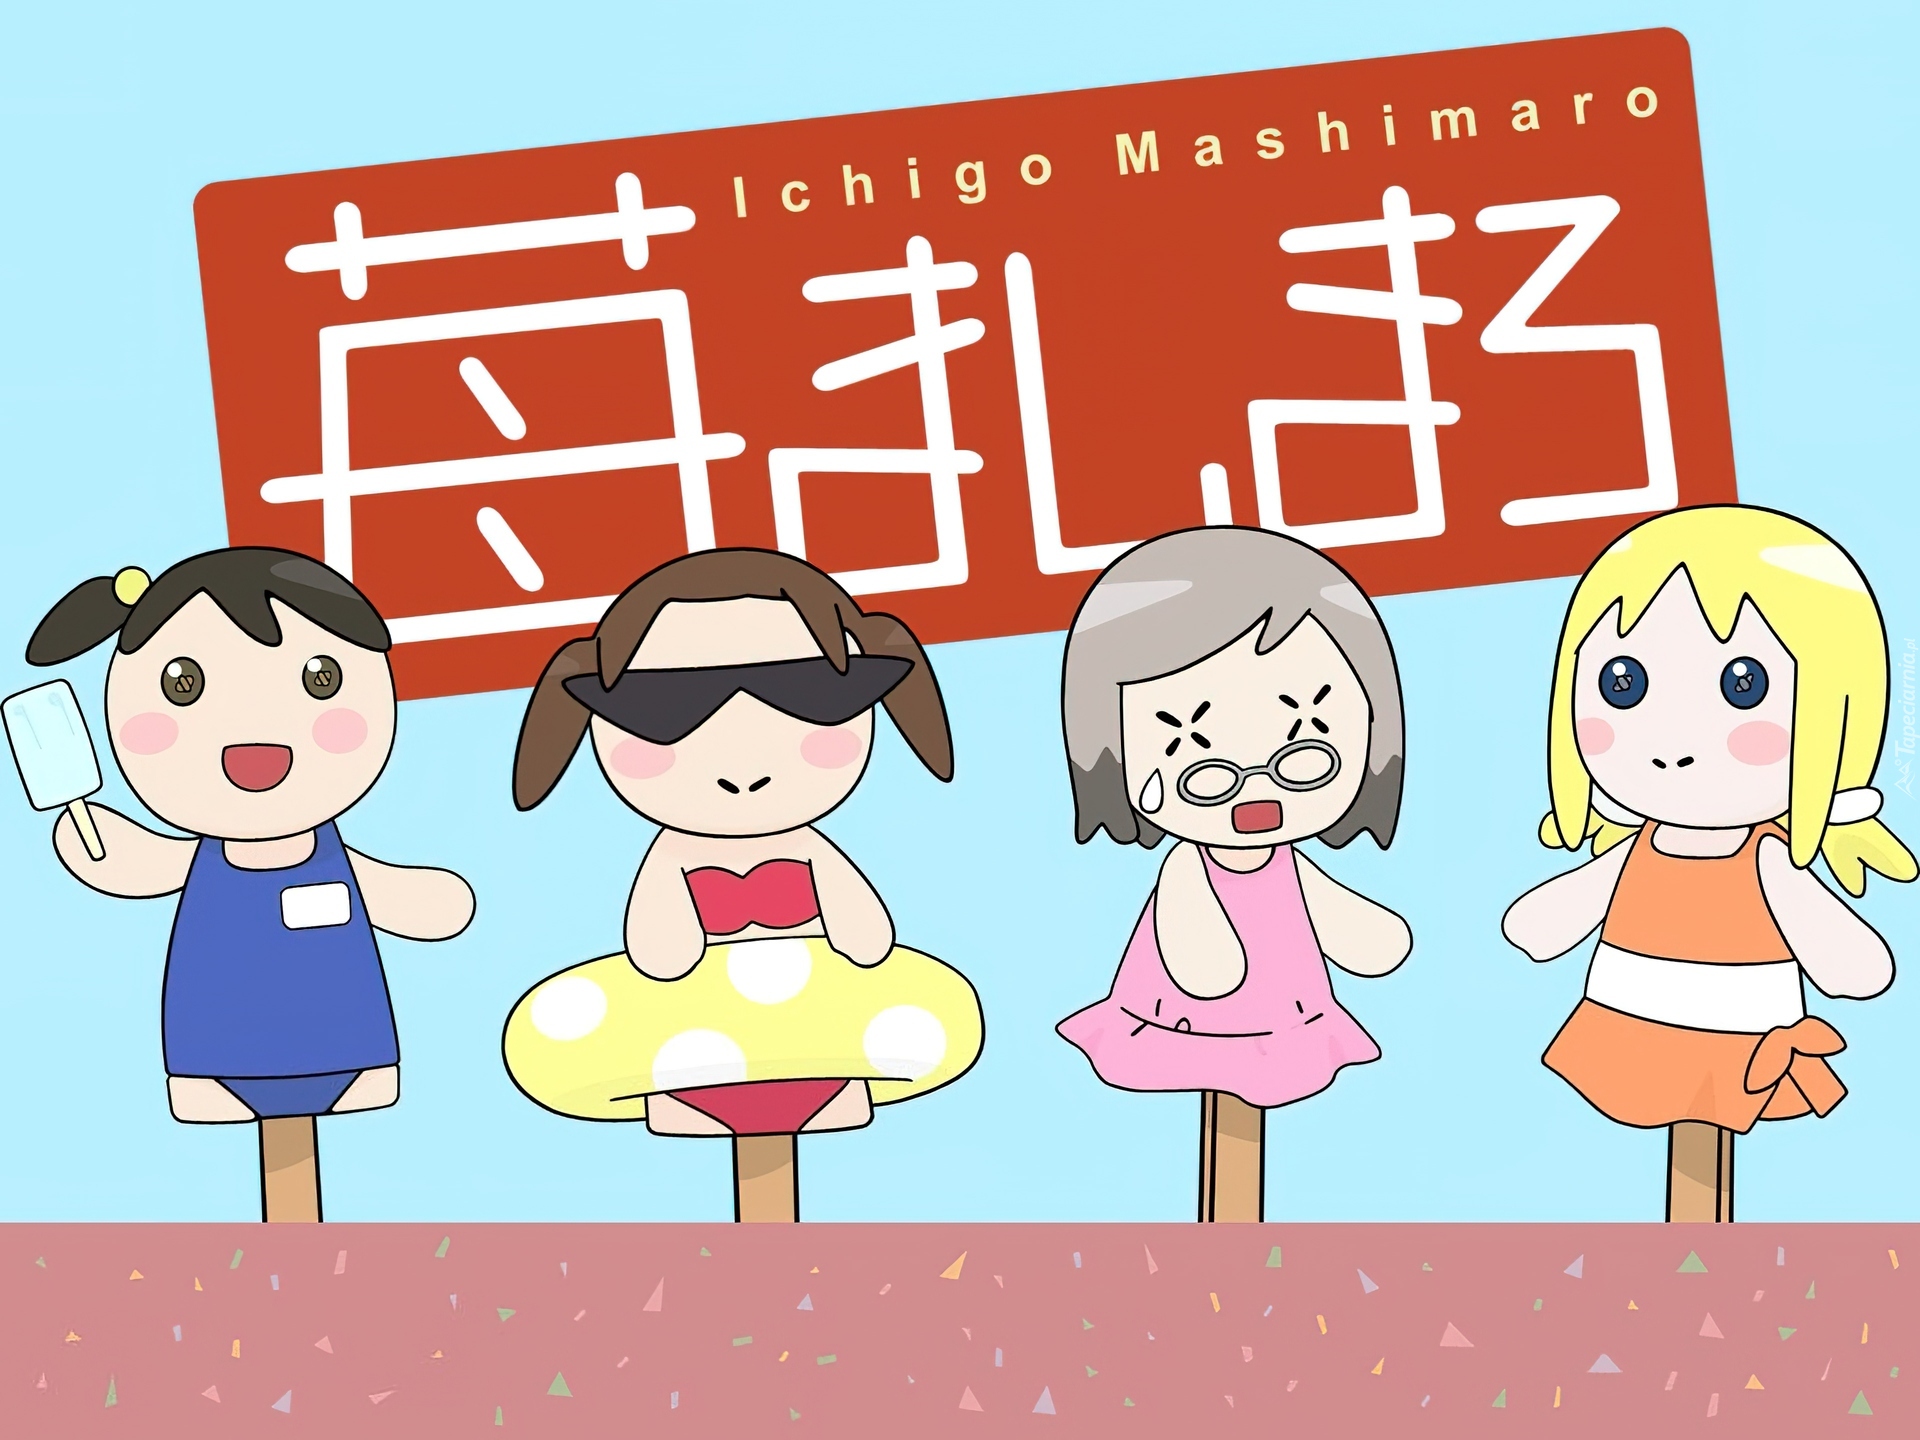 Ichigo Mashimaro, pacynki, kukiełki, zabawki